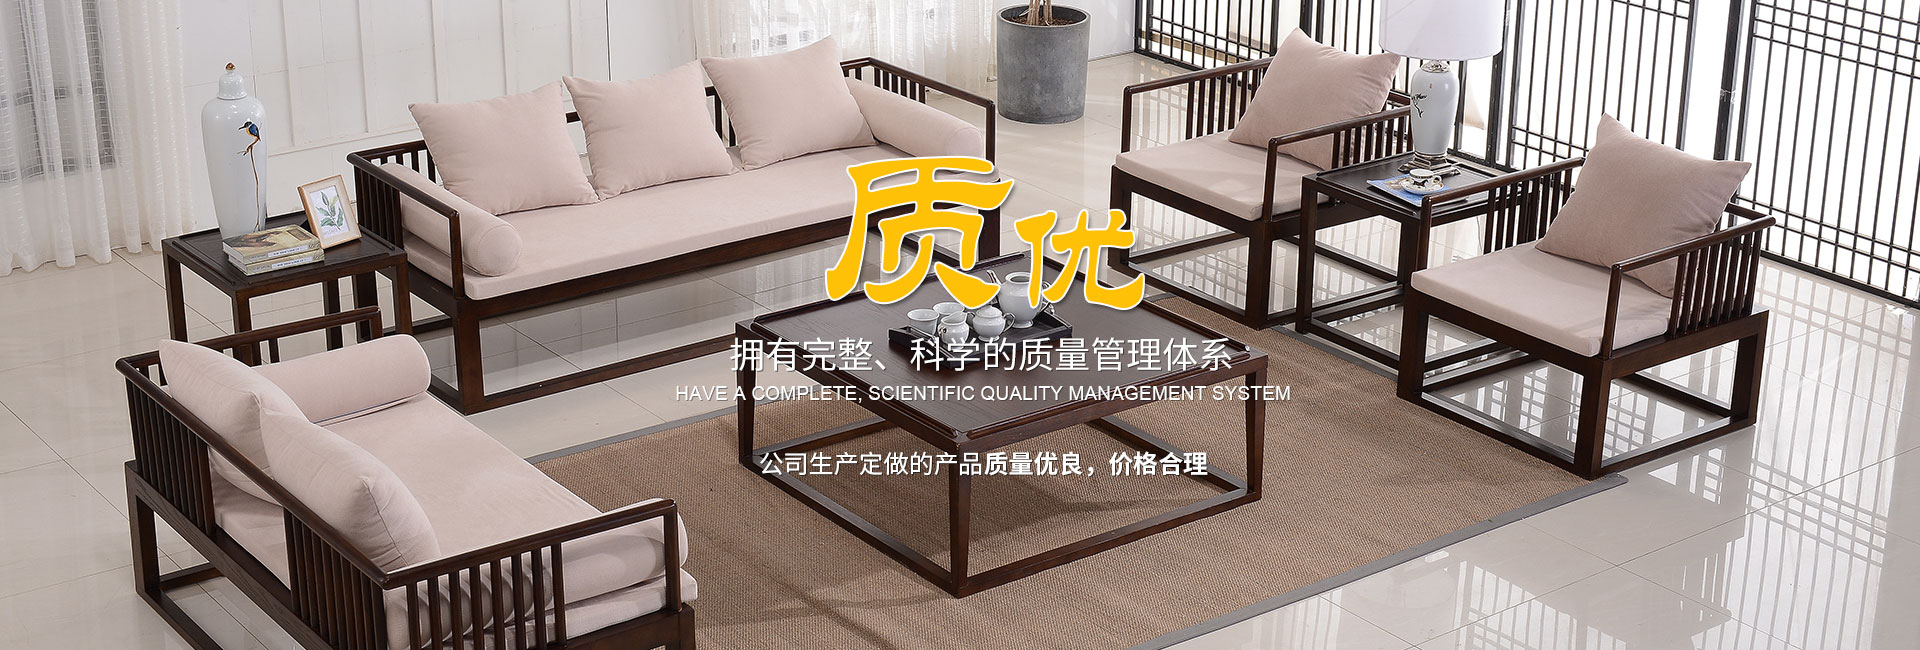 新中式家具 新中式家具整装 新中式酒店家具 新中式家具定制 苏州明风堂家具有限公司